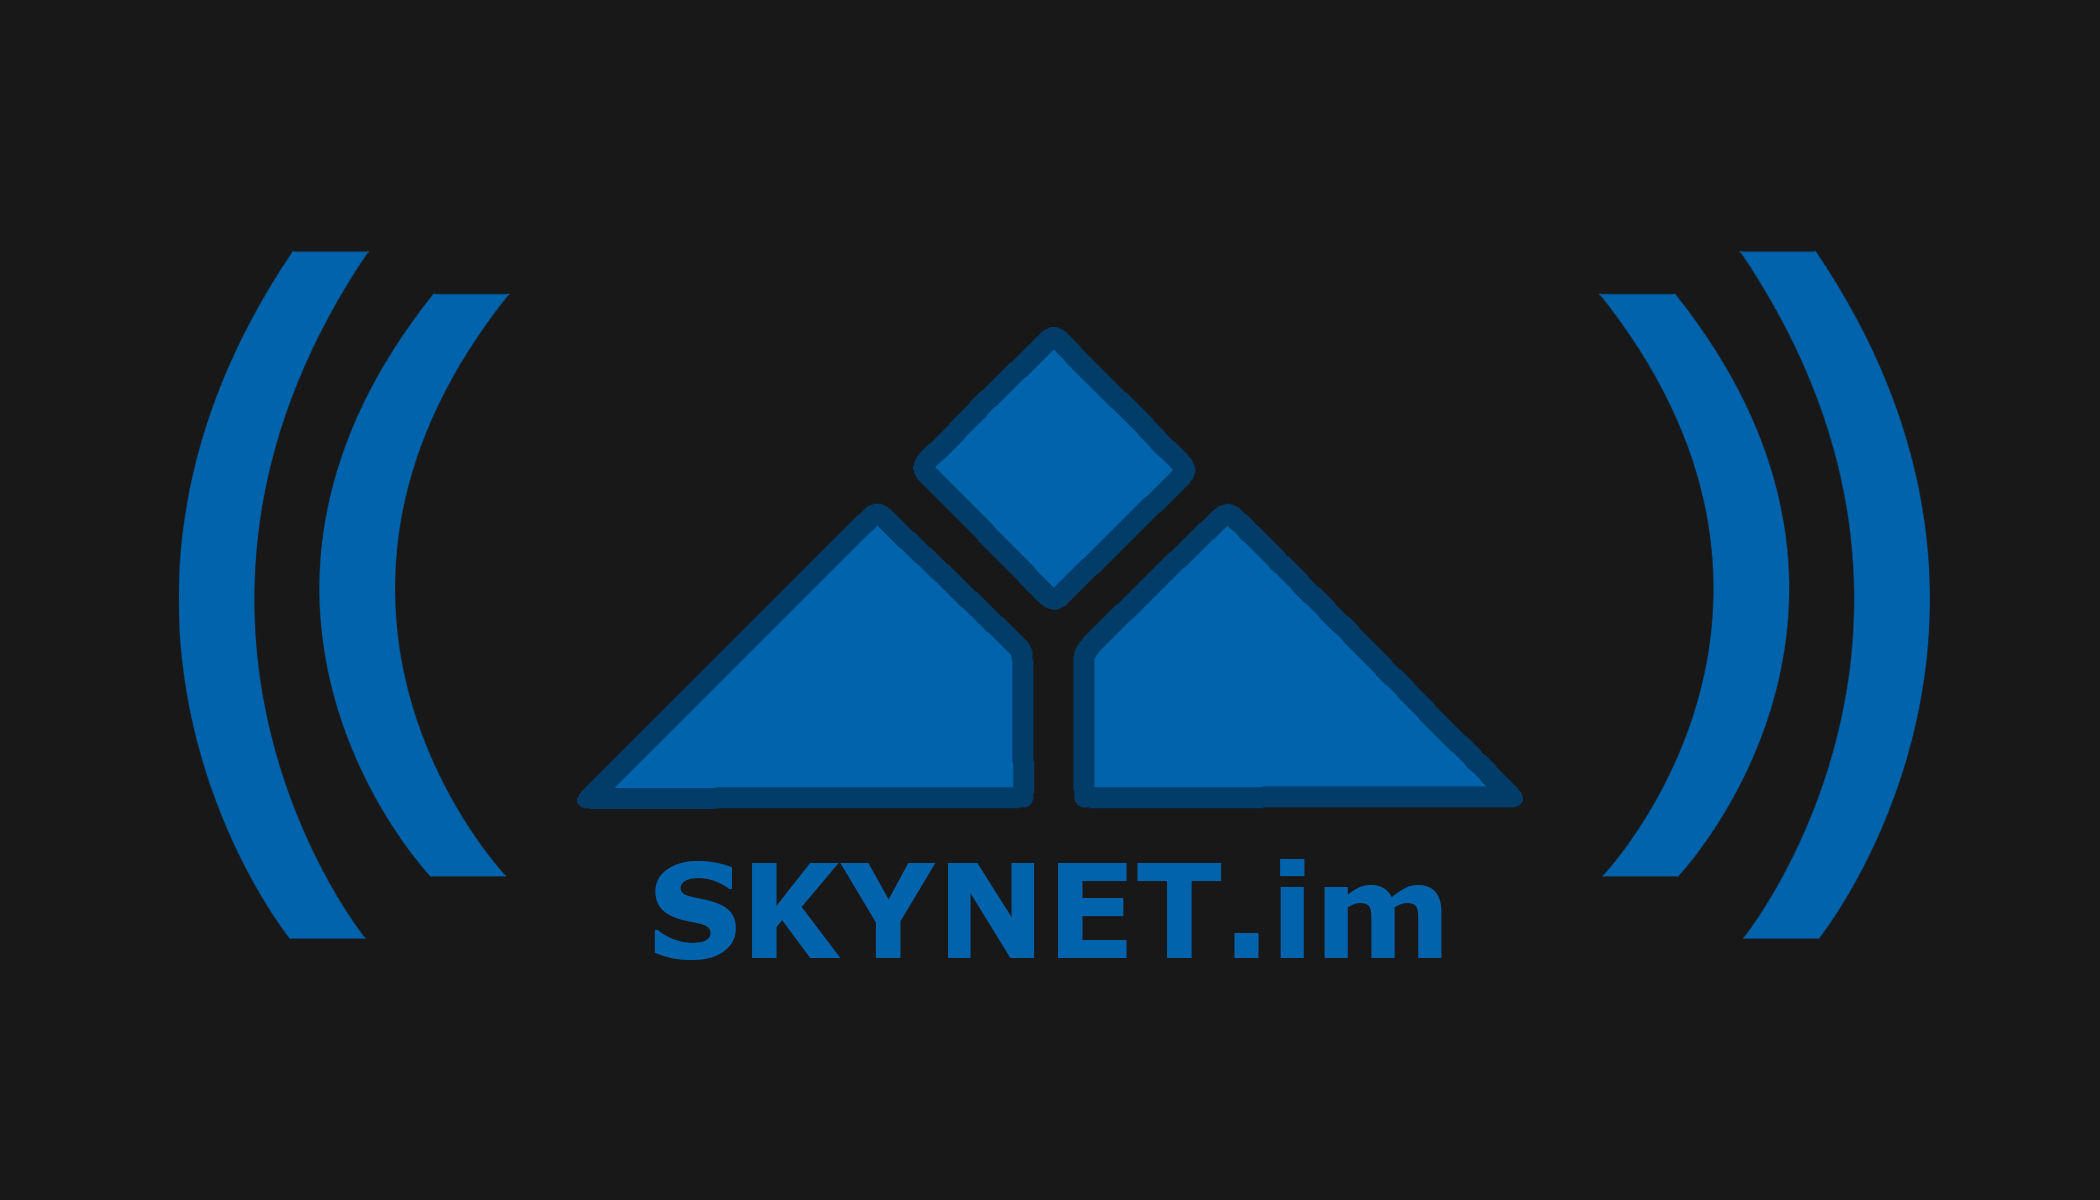 SkyNet.im